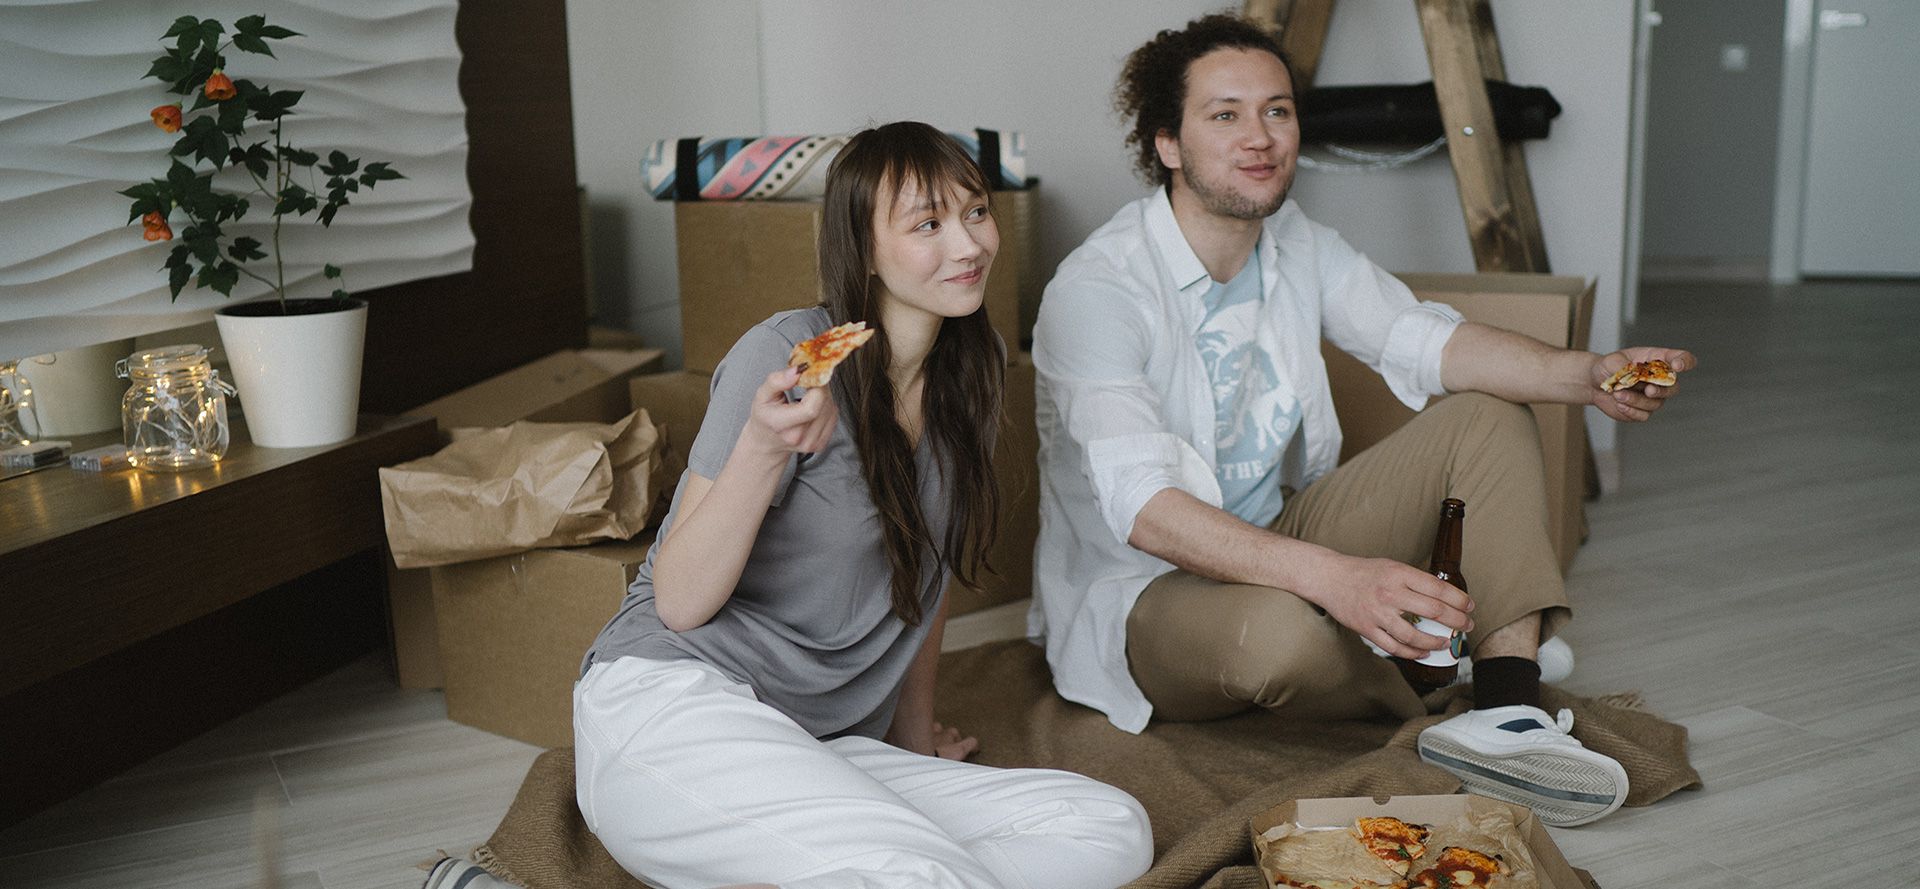 Coppia che mangia la pizza durante un appuntamento.